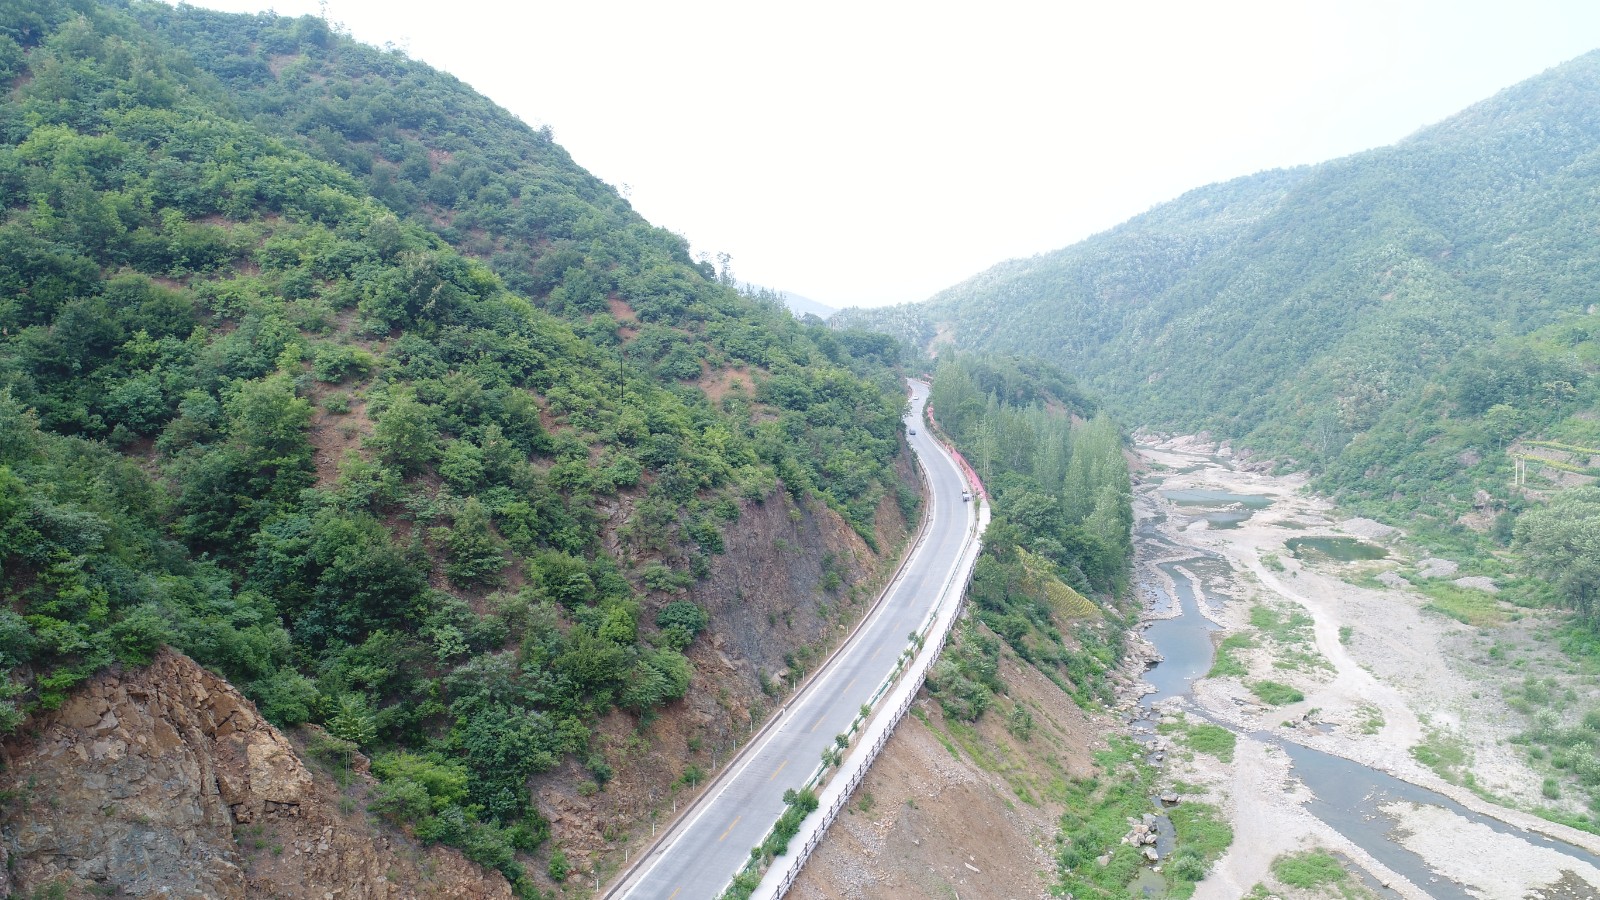 344国道嵩县库区规划图图片